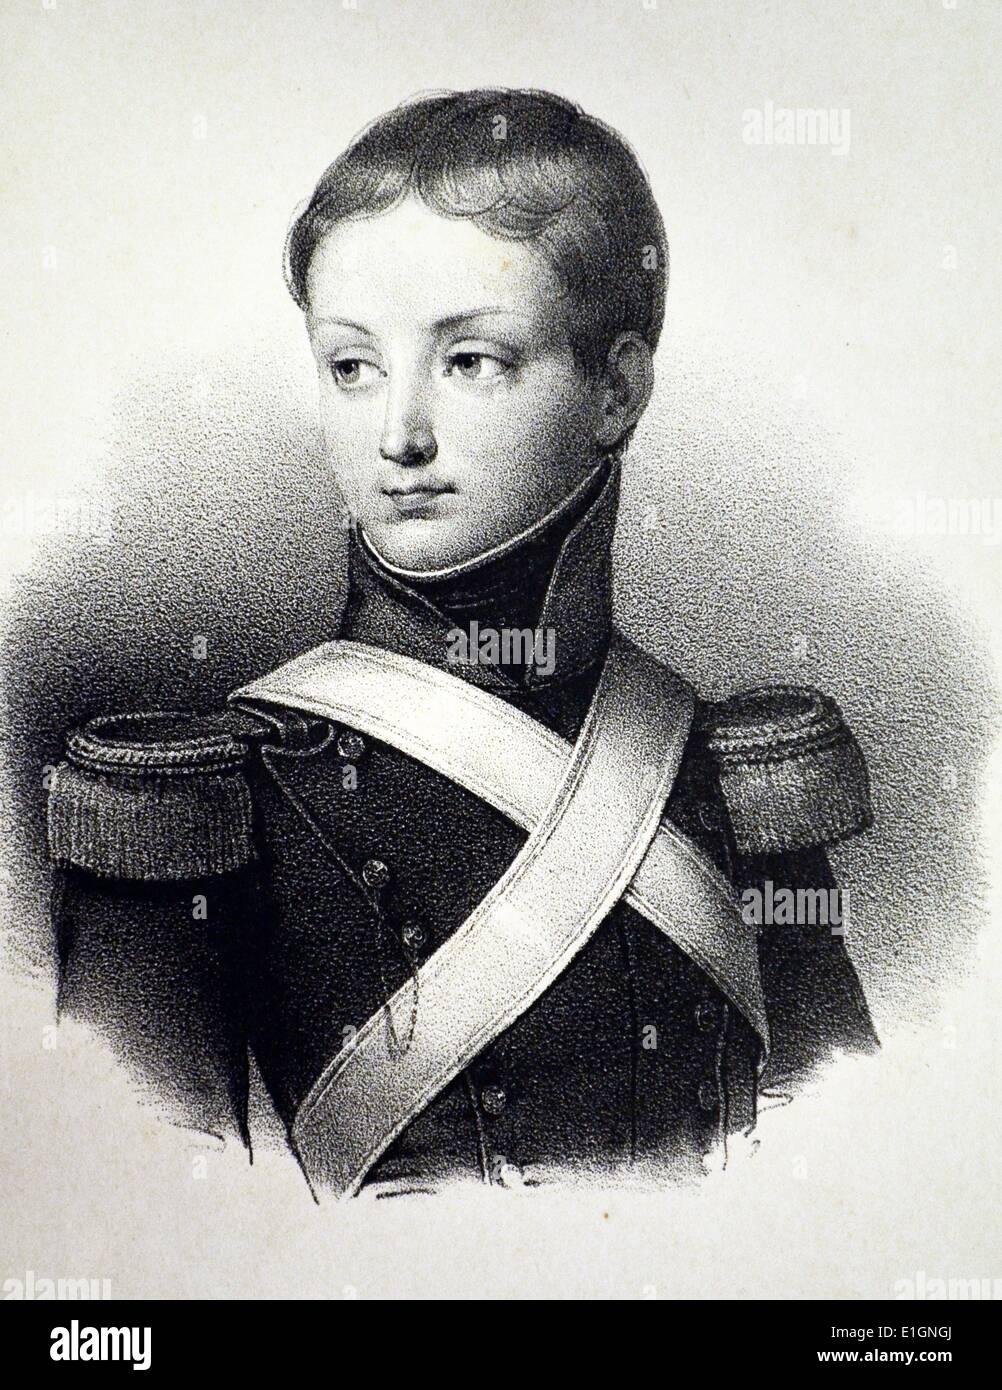 François, Prince de Joinville (1818-1900) troisième fils de Louis Philippe I de France. Lithographie, Paris, c1840. Banque D'Images